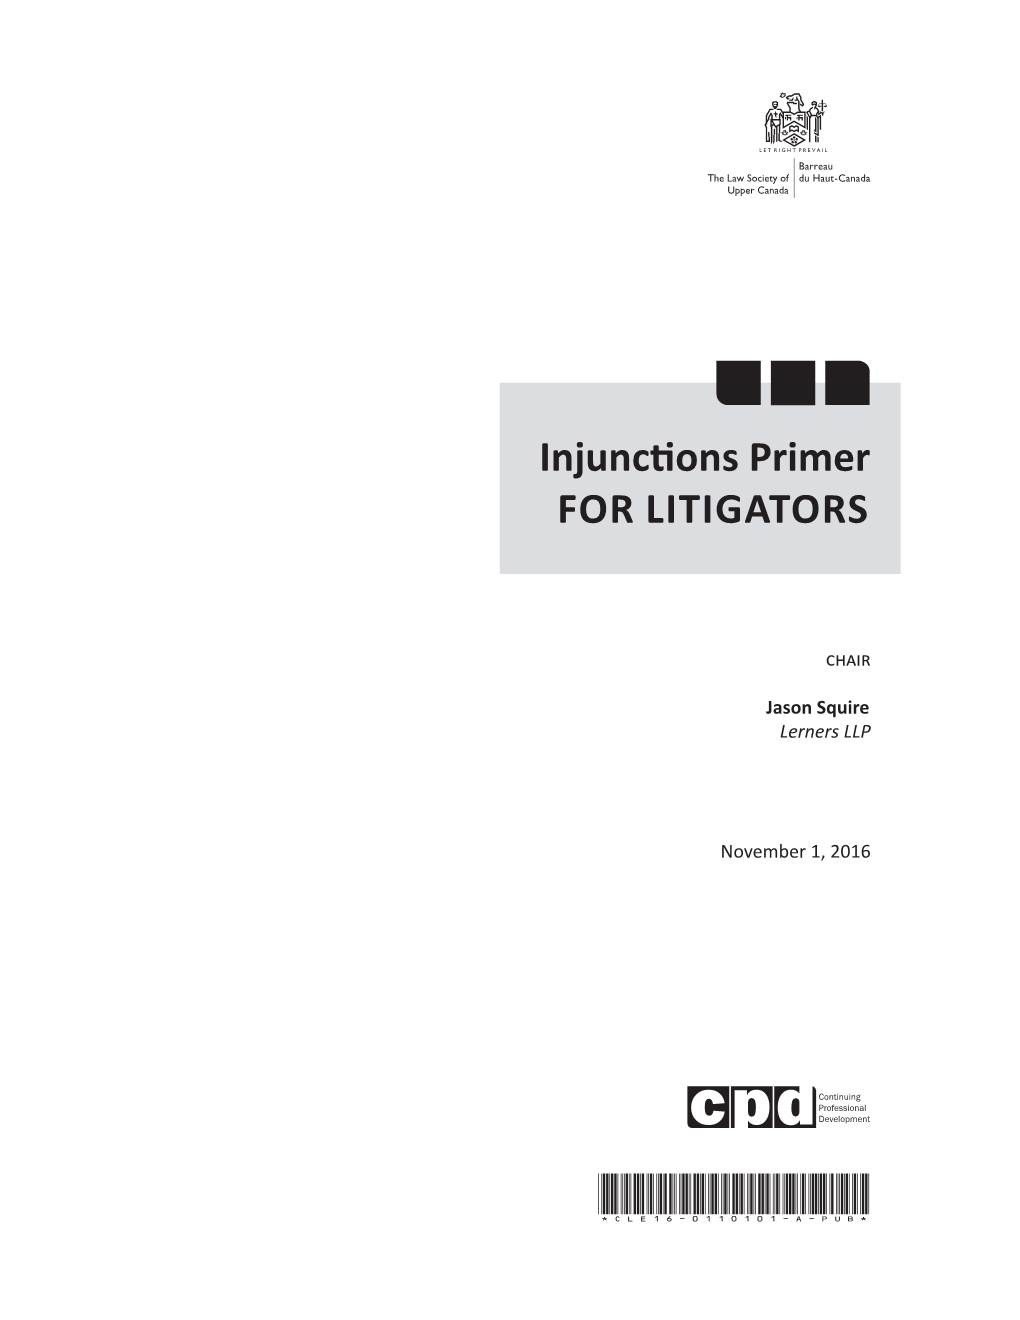 Injunctions Primer for LITIGATORS